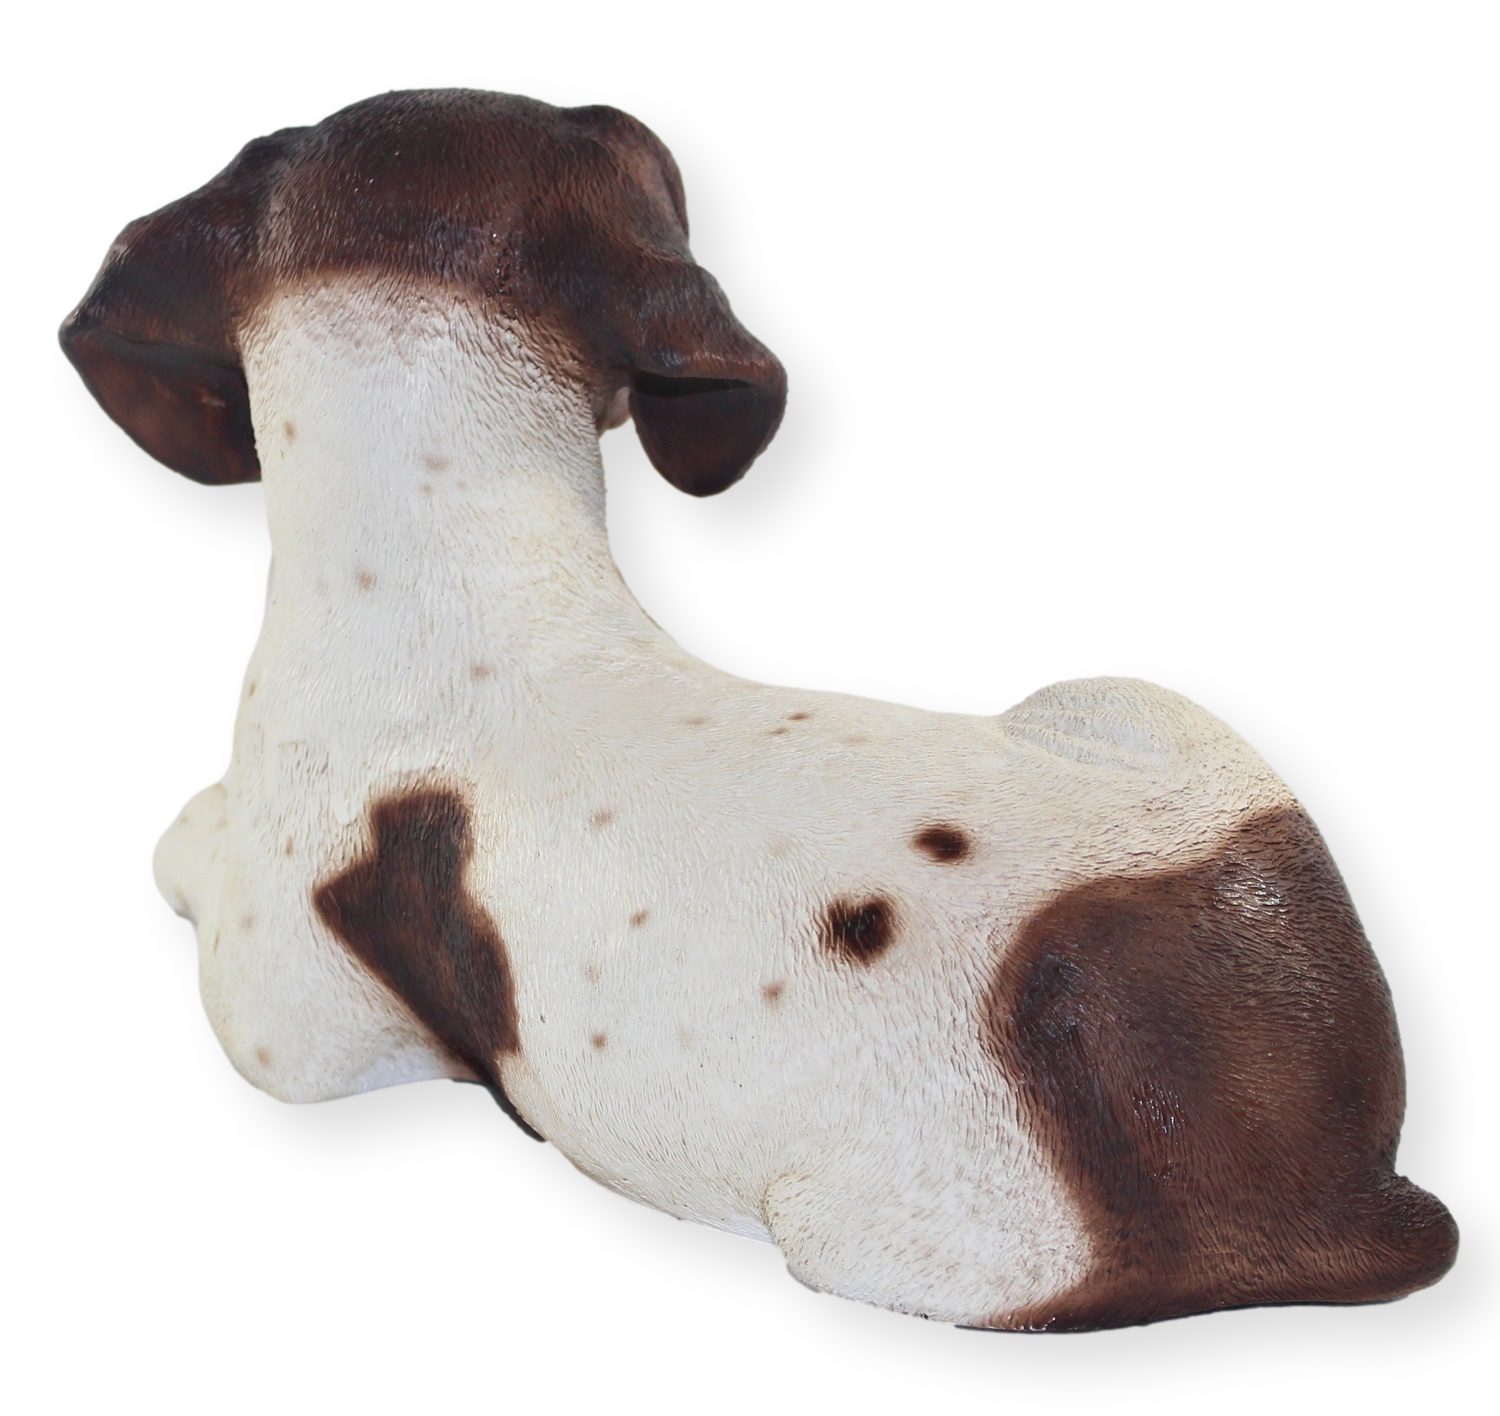 Figur H liegend cm Castagna Hundefigur braun gefleckt Tierfigur Castagna Pointer 18 englischer Hund Resin Kollektion